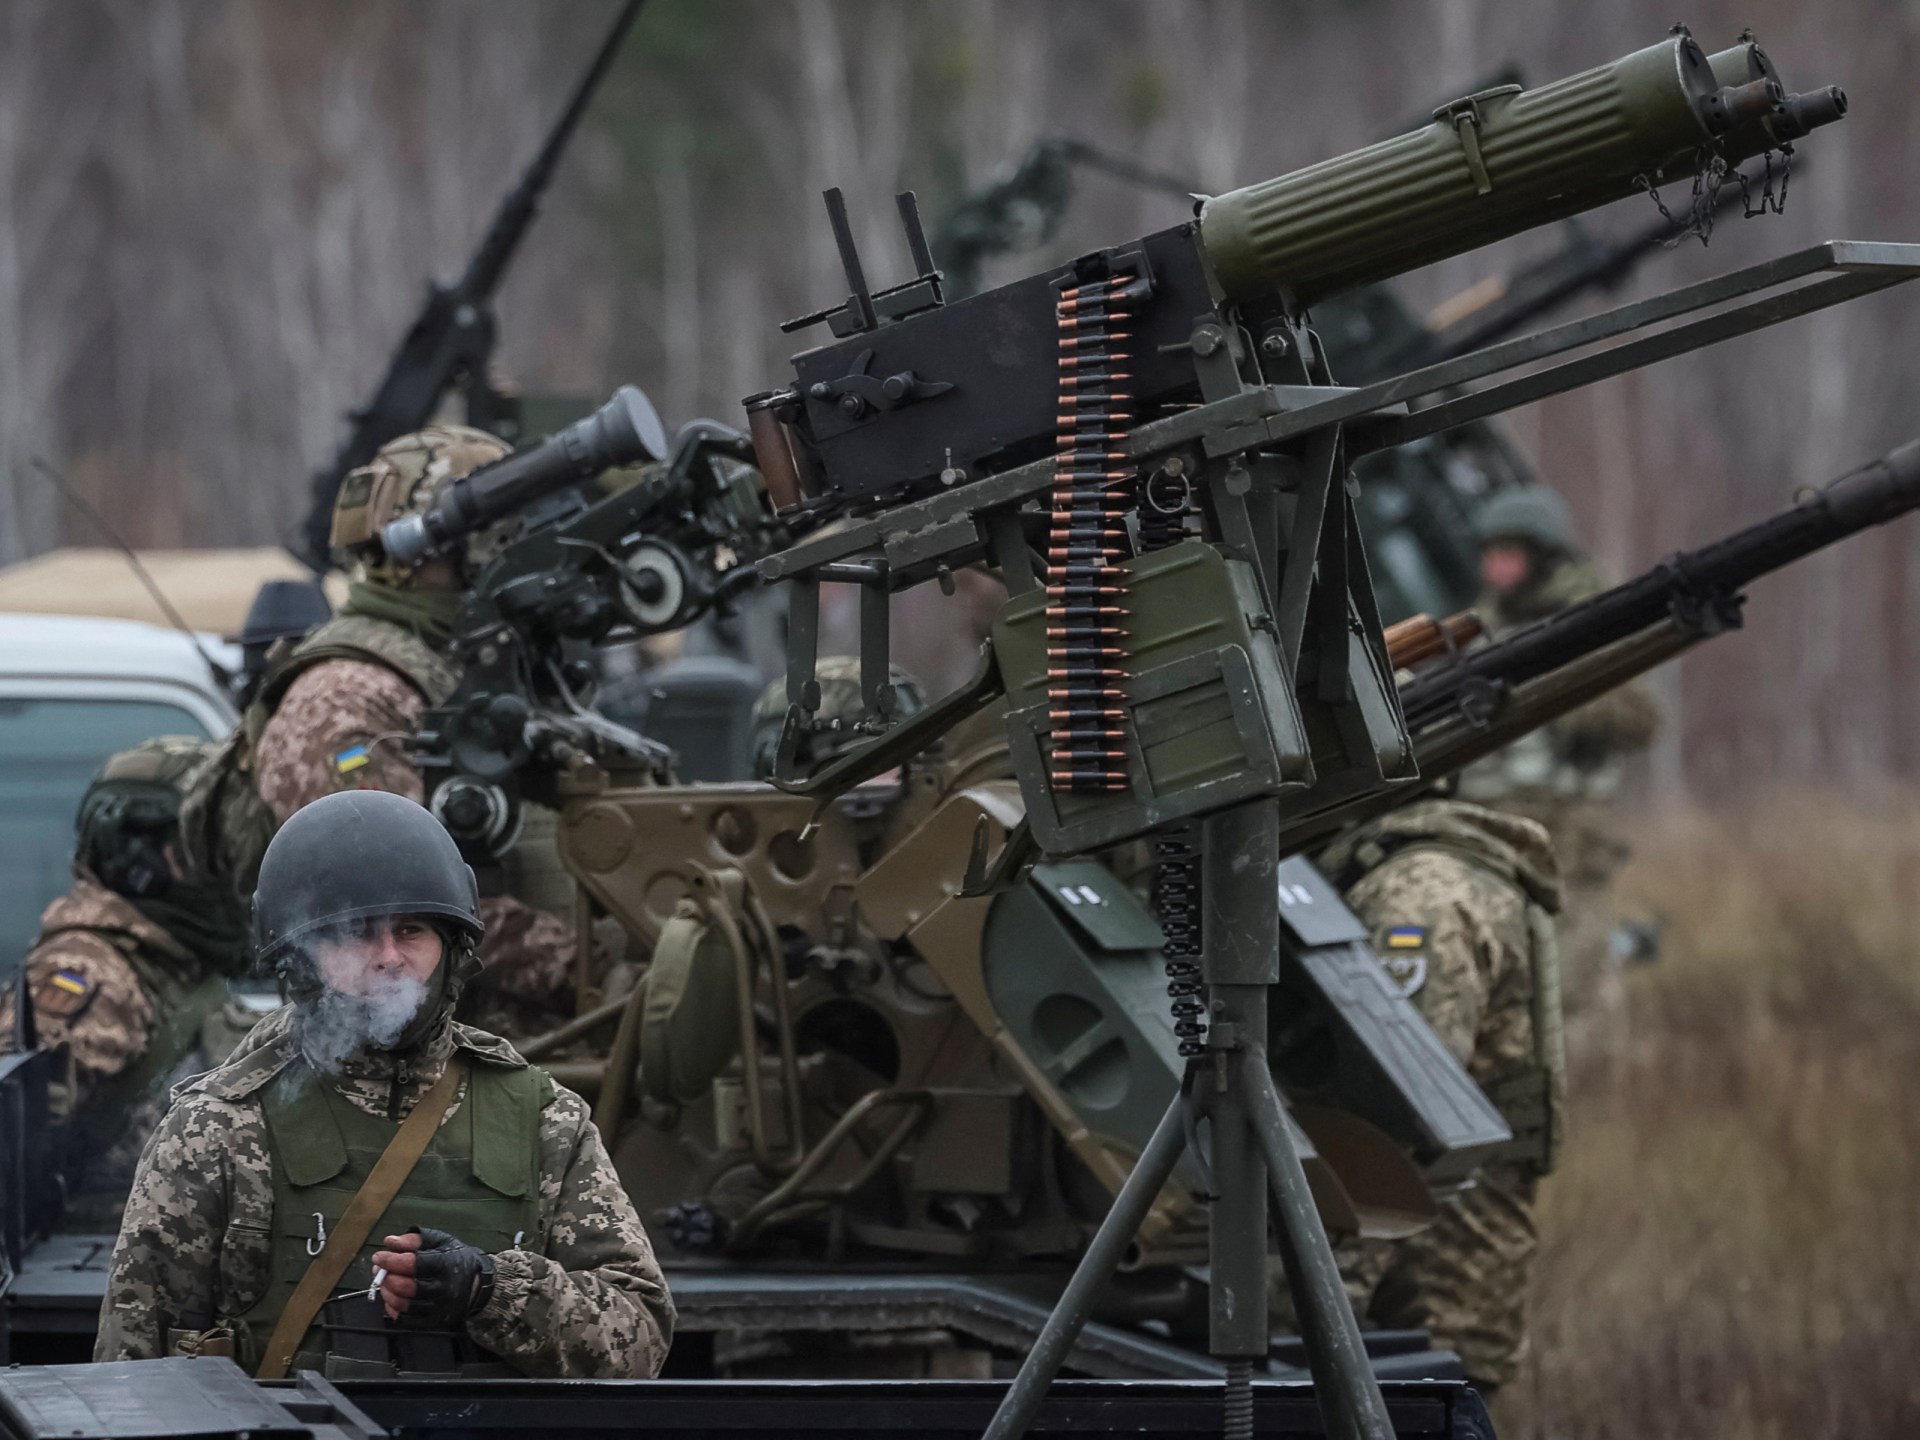 واشنطن تفرج عن الحزمة الأخيرة من المساعدات العسكرية المتاحة لأوكرانيا | أخبار – البوكس نيوز